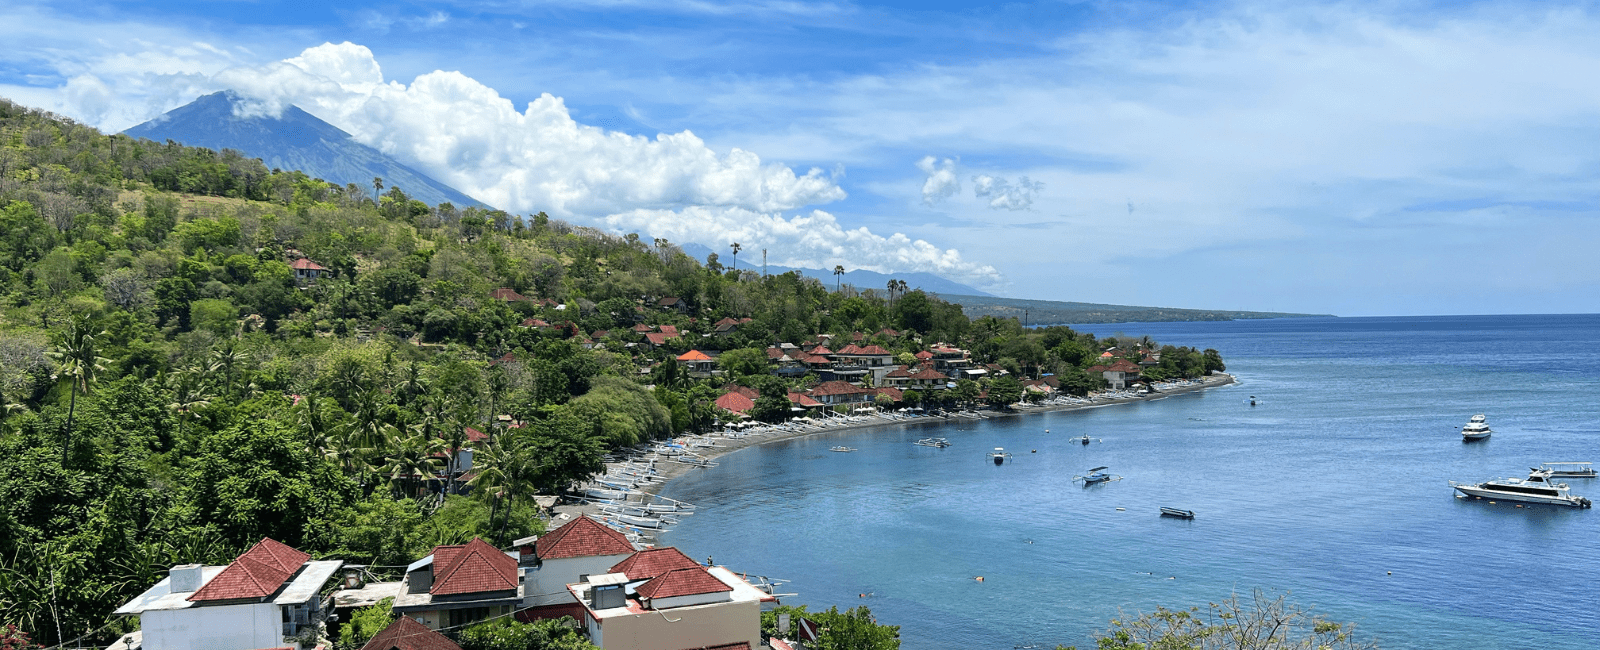 Seaside town in Bali